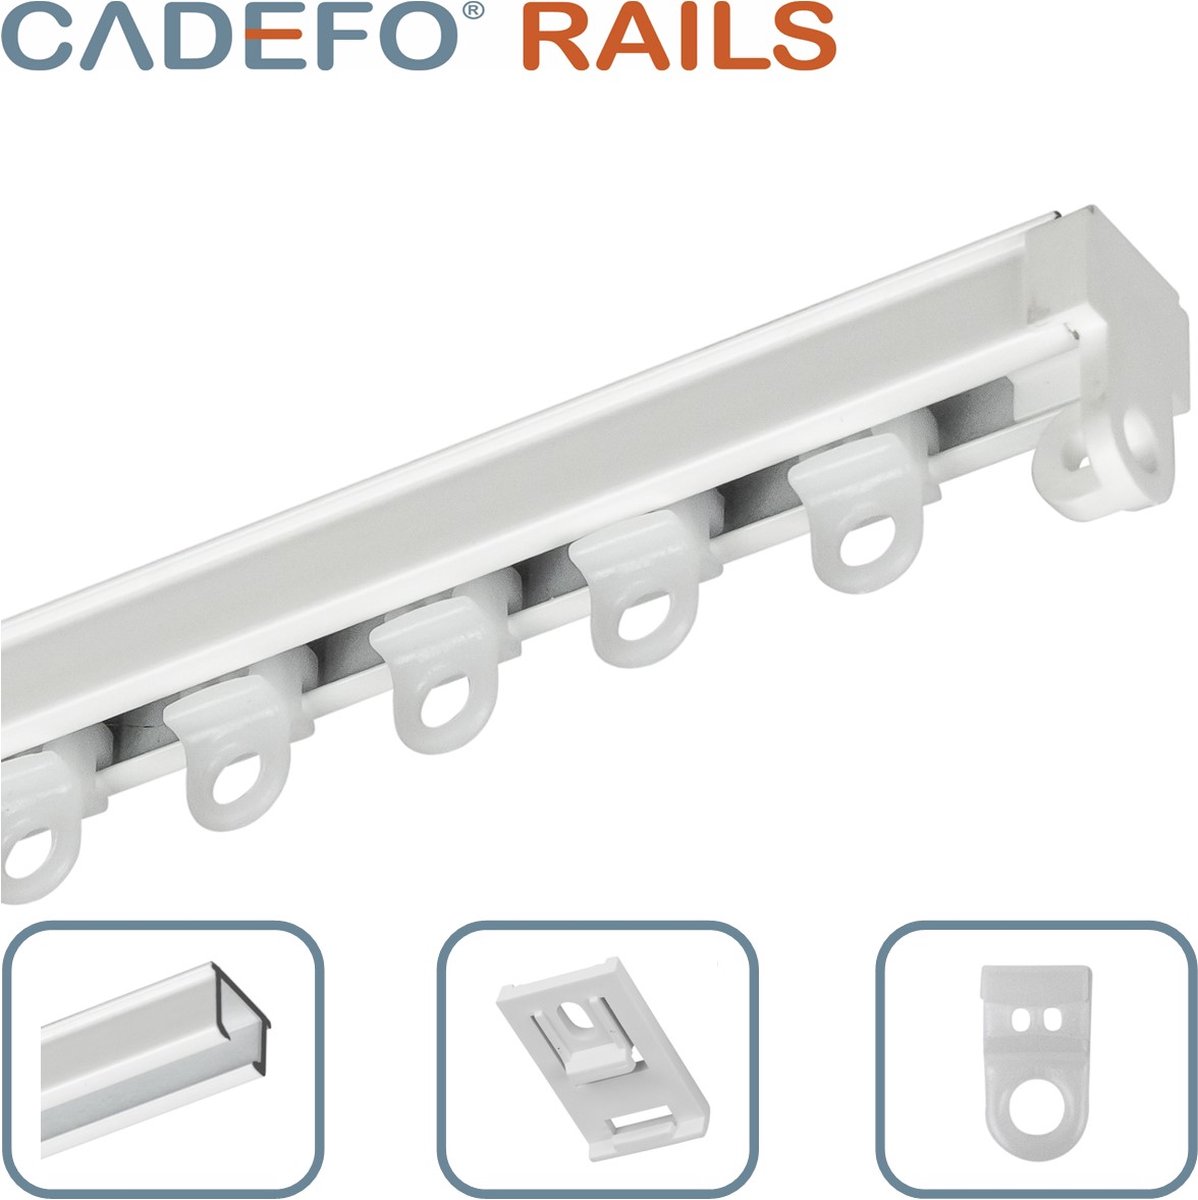 CADEFO RAILS (101 - 150 cm) Gordijnrails - Compleet op maat! - UIT 1 STUK - Leverbaar tot 6 meter - Plafondbevestiging - Lengte 124 cm